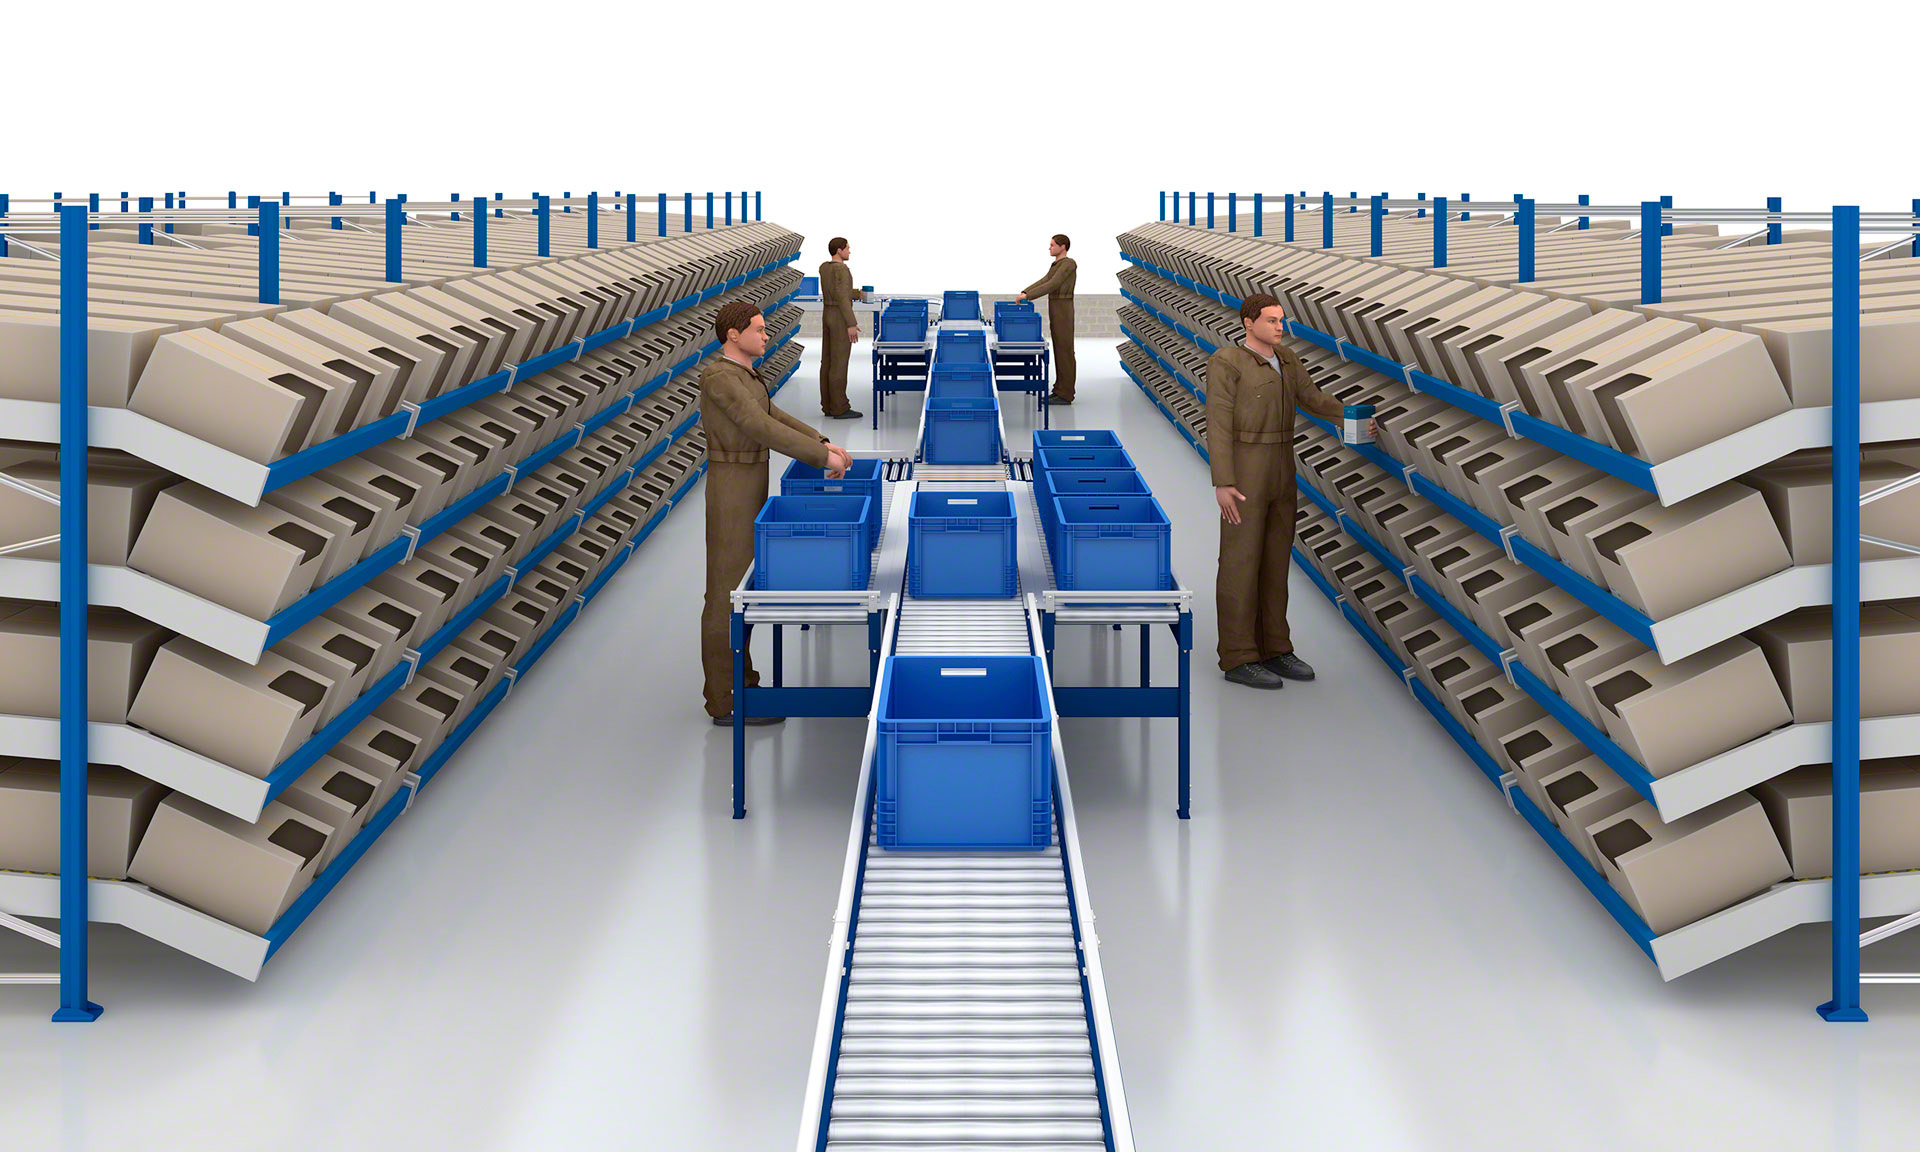 Las estanterías para picking dinámico suelen combinarse con soluciones de transporte automático para acelerar el flujo de mercancías por el almacén